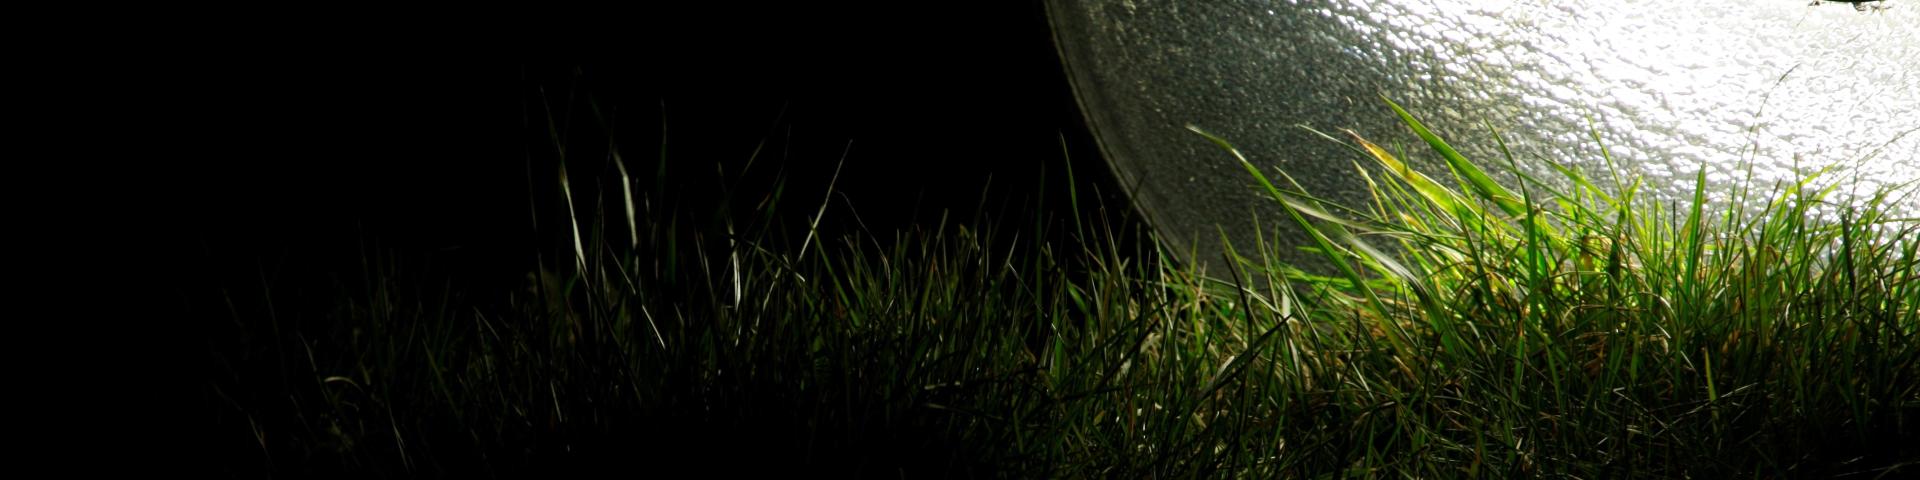 omgevallen lantarenpaal die licht op het gras schijnt